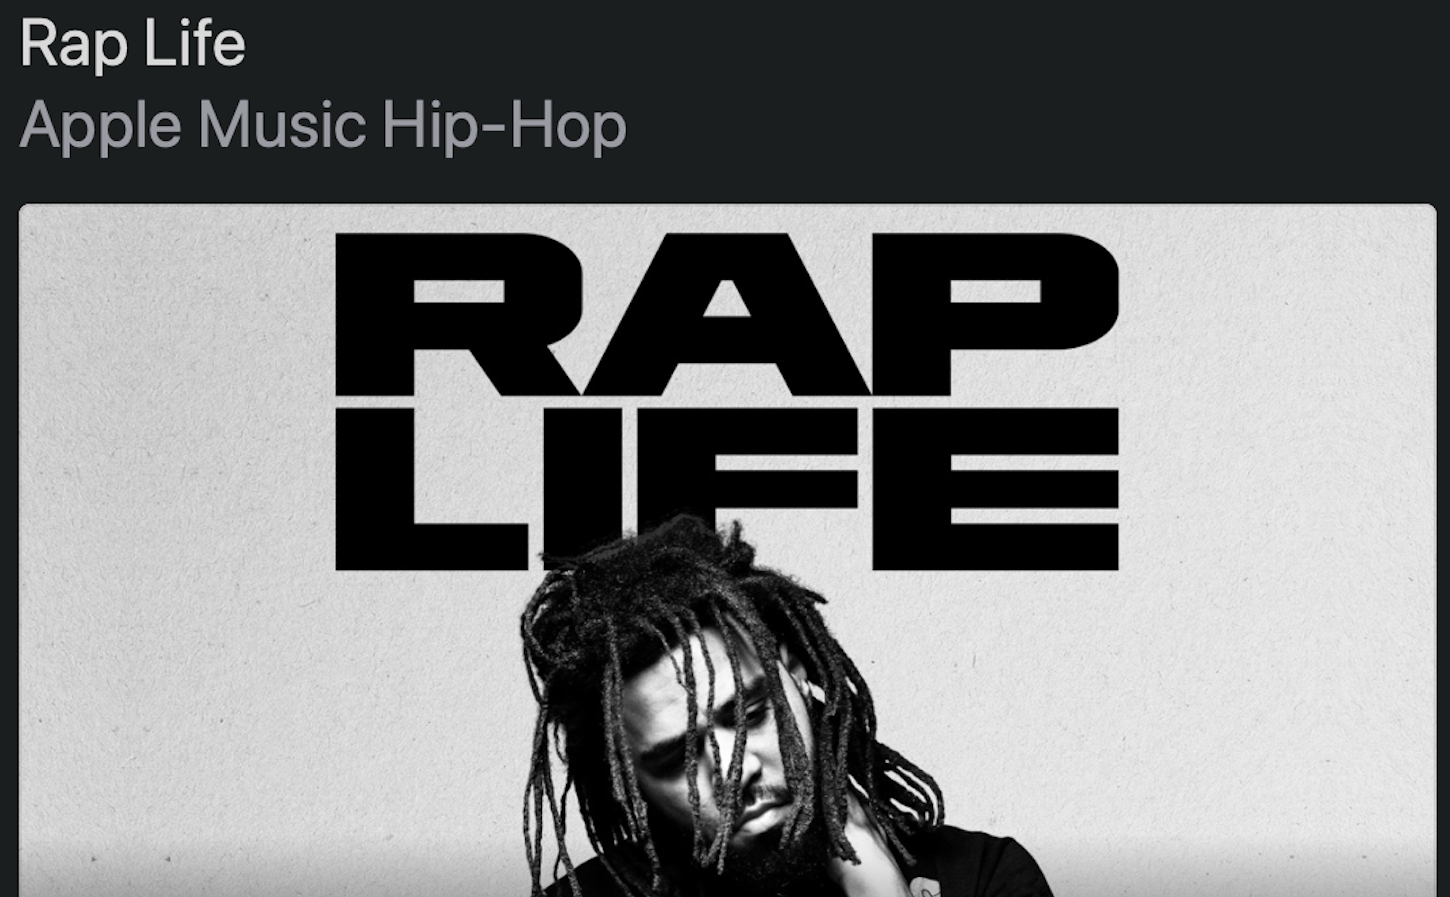 Apple Music giới thiệu playlist 'Rap Life' và radio show dành riêng cho nhạc hip-hop trên Beats 1